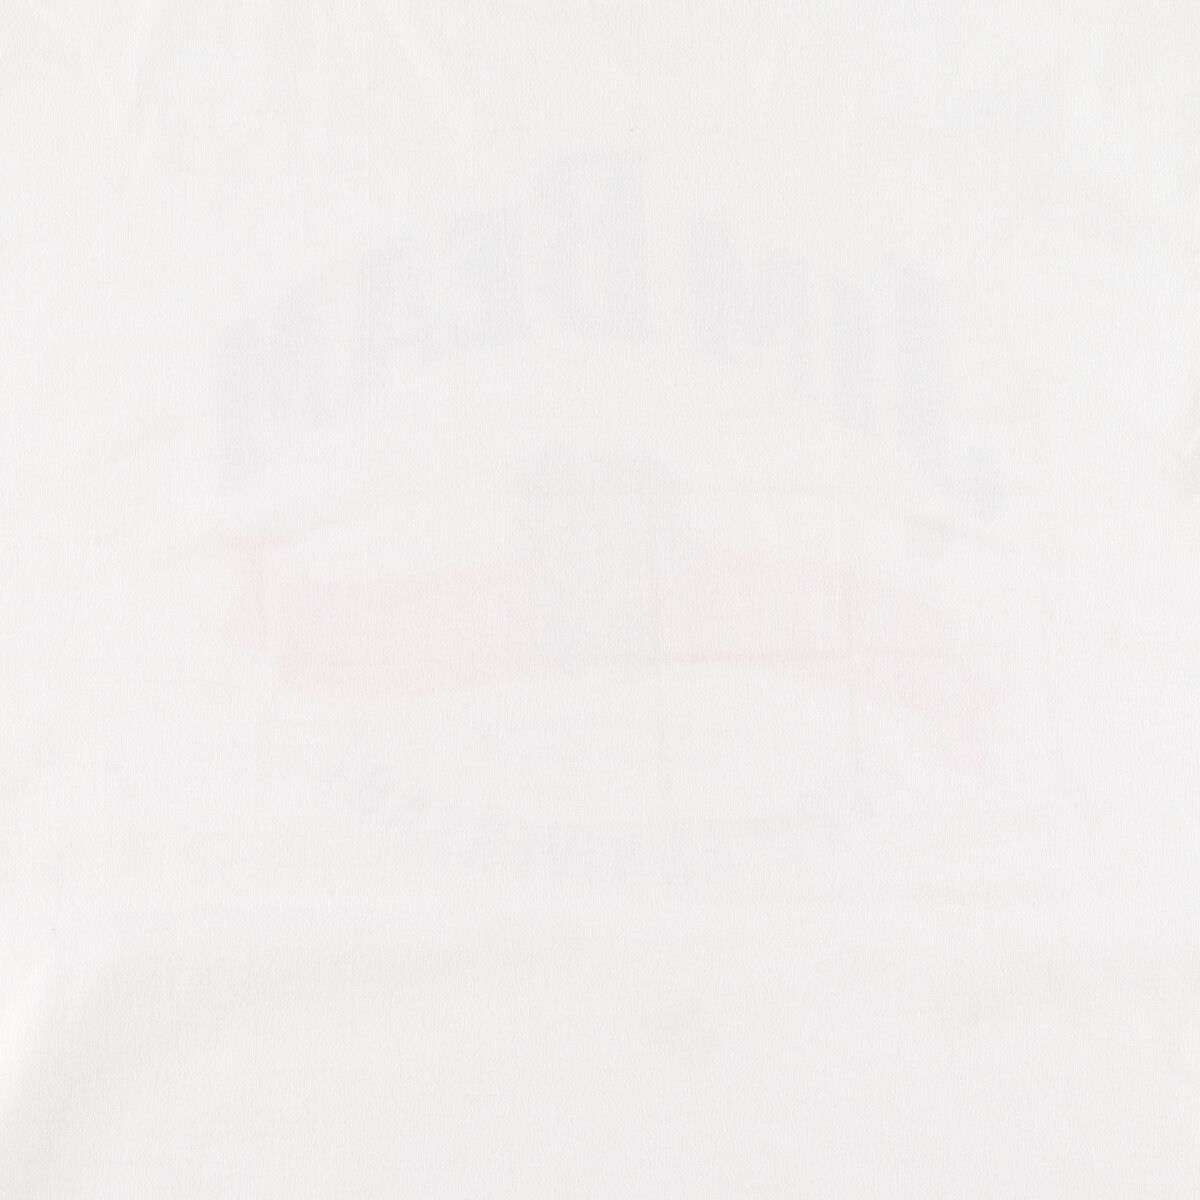 プリント生産国90年代 Murina JIM BEAM アドバタイジングTシャツ USA製 メンズL ヴィンテージ /eaa348965